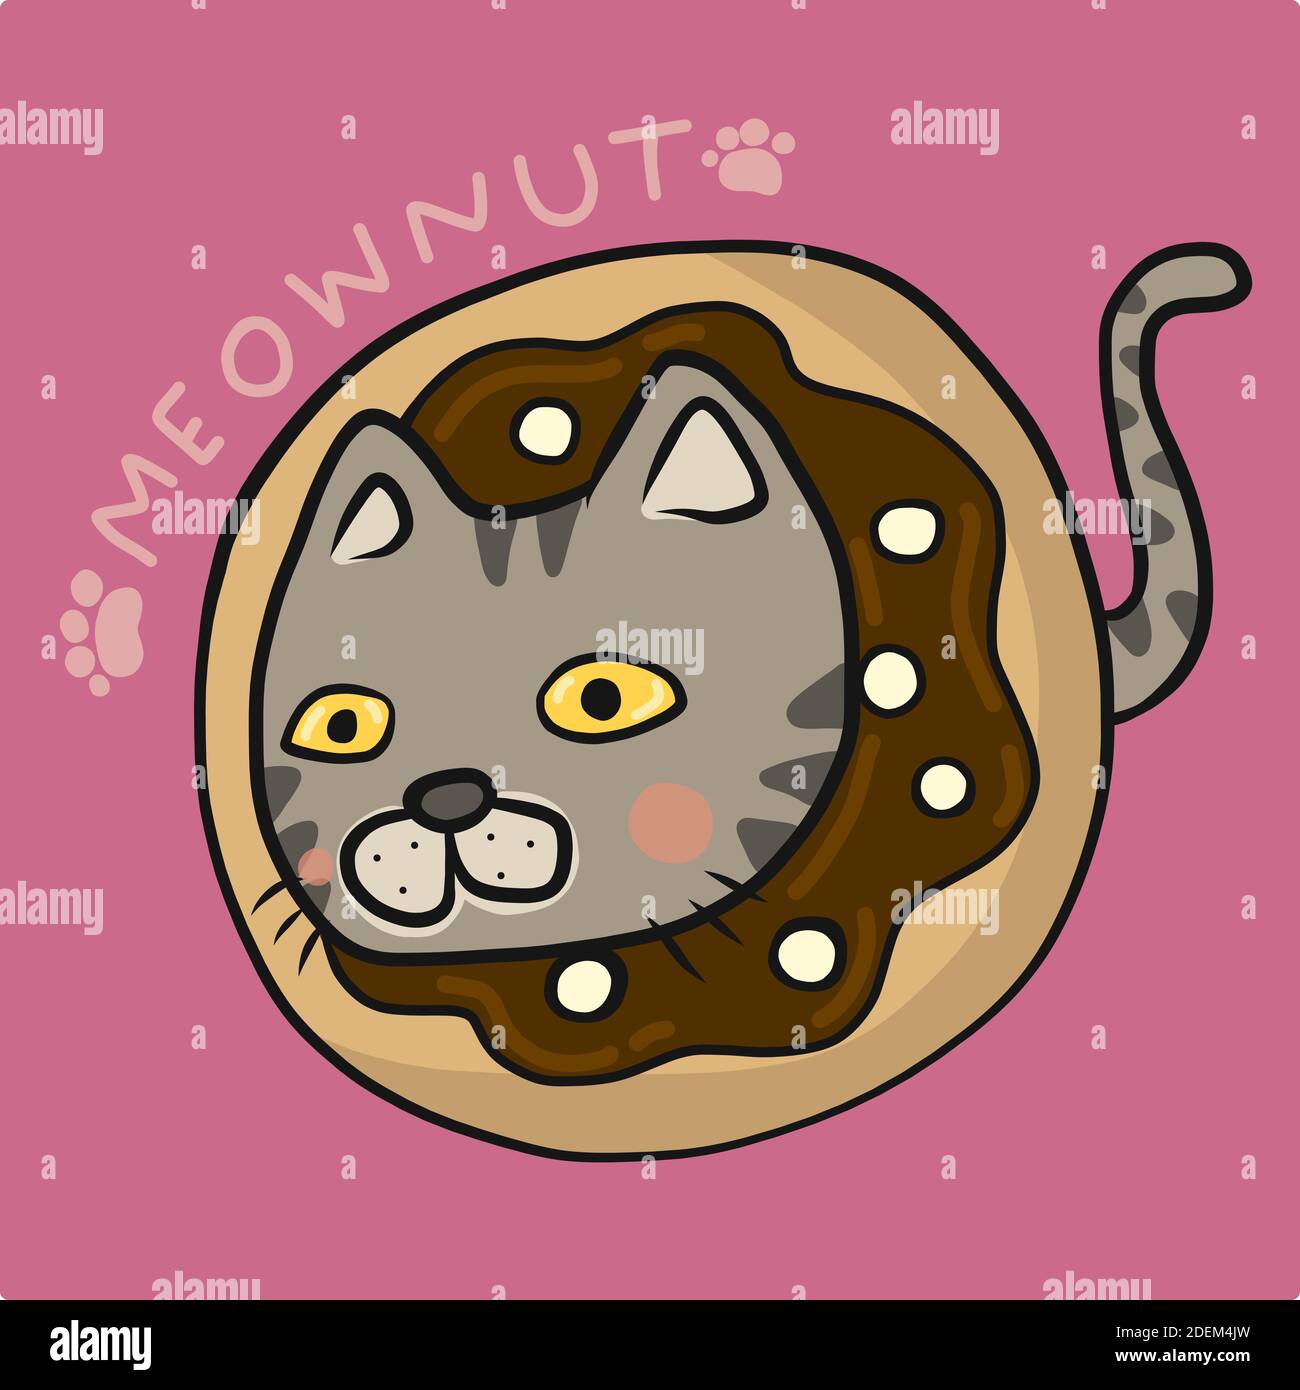 Meownut, Tabby cat inside donut cartoon vector illustration Stock Vector